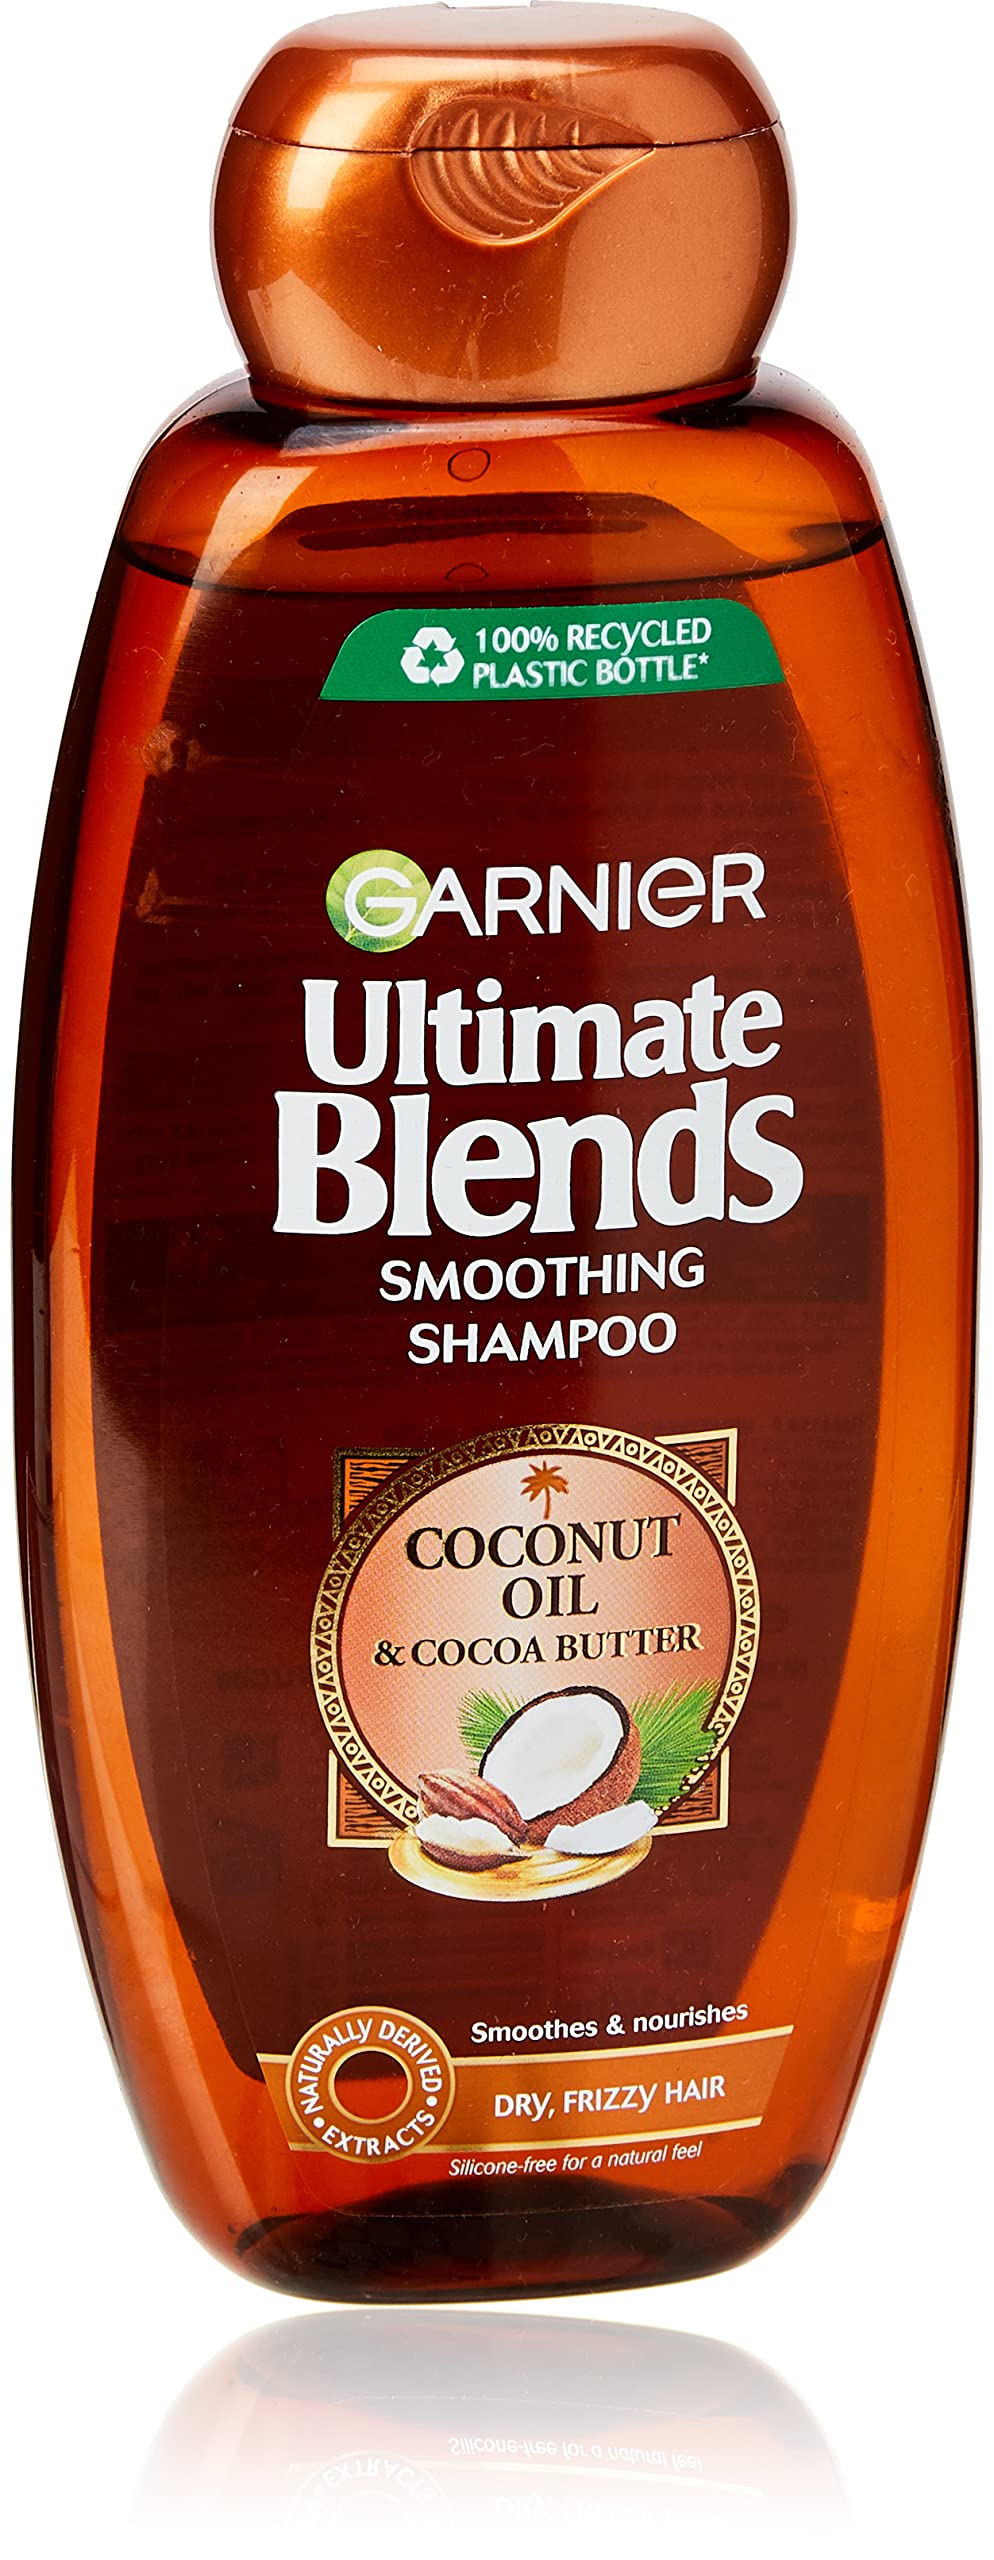 garnier szampon kokosowy